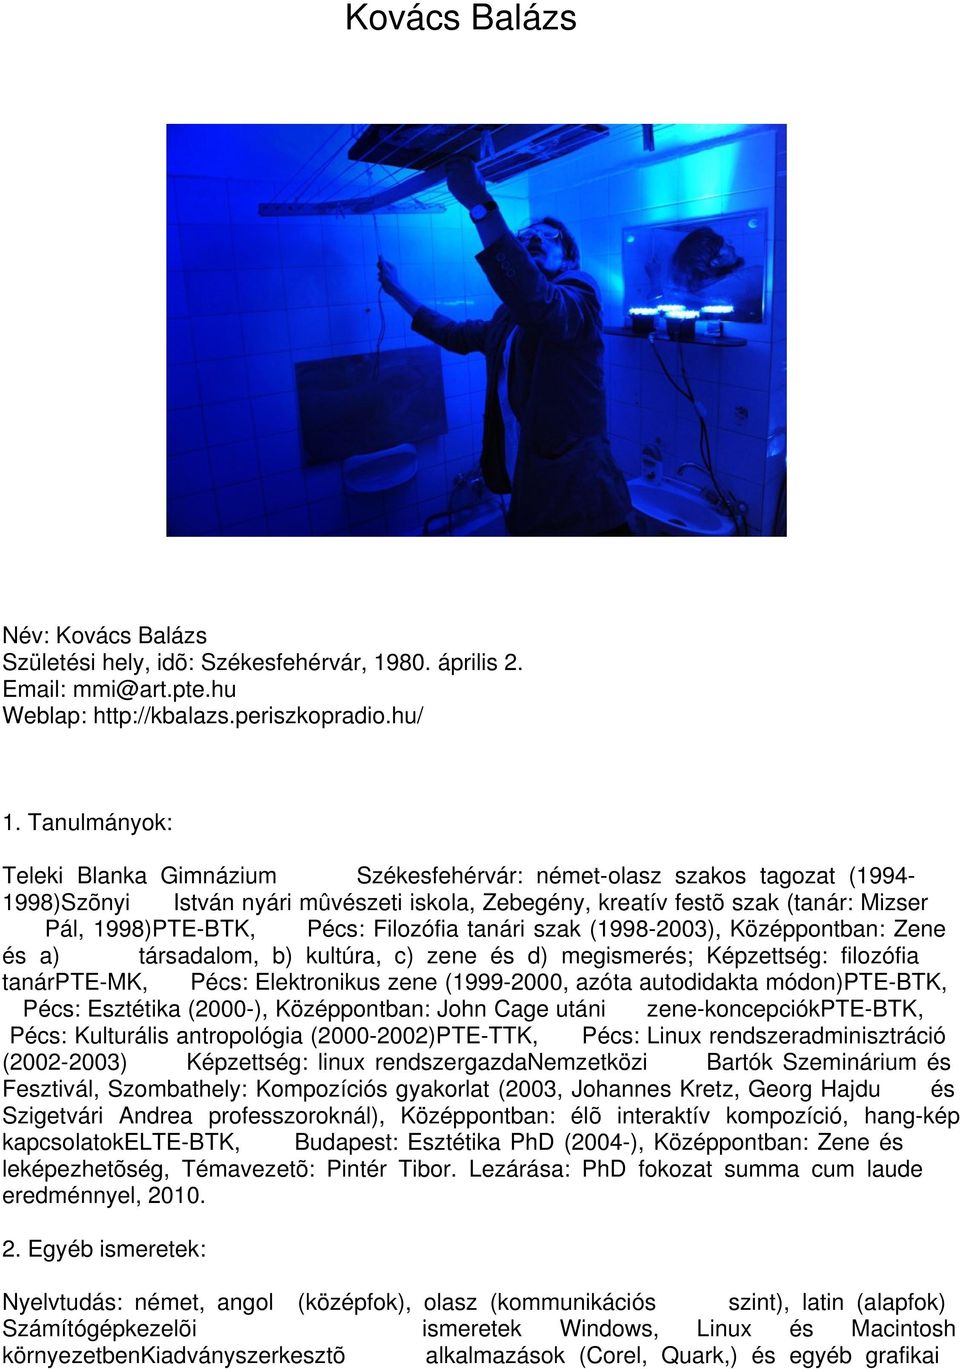 Filozófia tanári szak (1998-2003), Középpontban: Zene és a) társadalom, b) kultúra, c) zene és d) megismerés; Képzettség: filozófia tanárpte-mk, Pécs: Elektronikus zene (1999-2000, azóta autodidakta